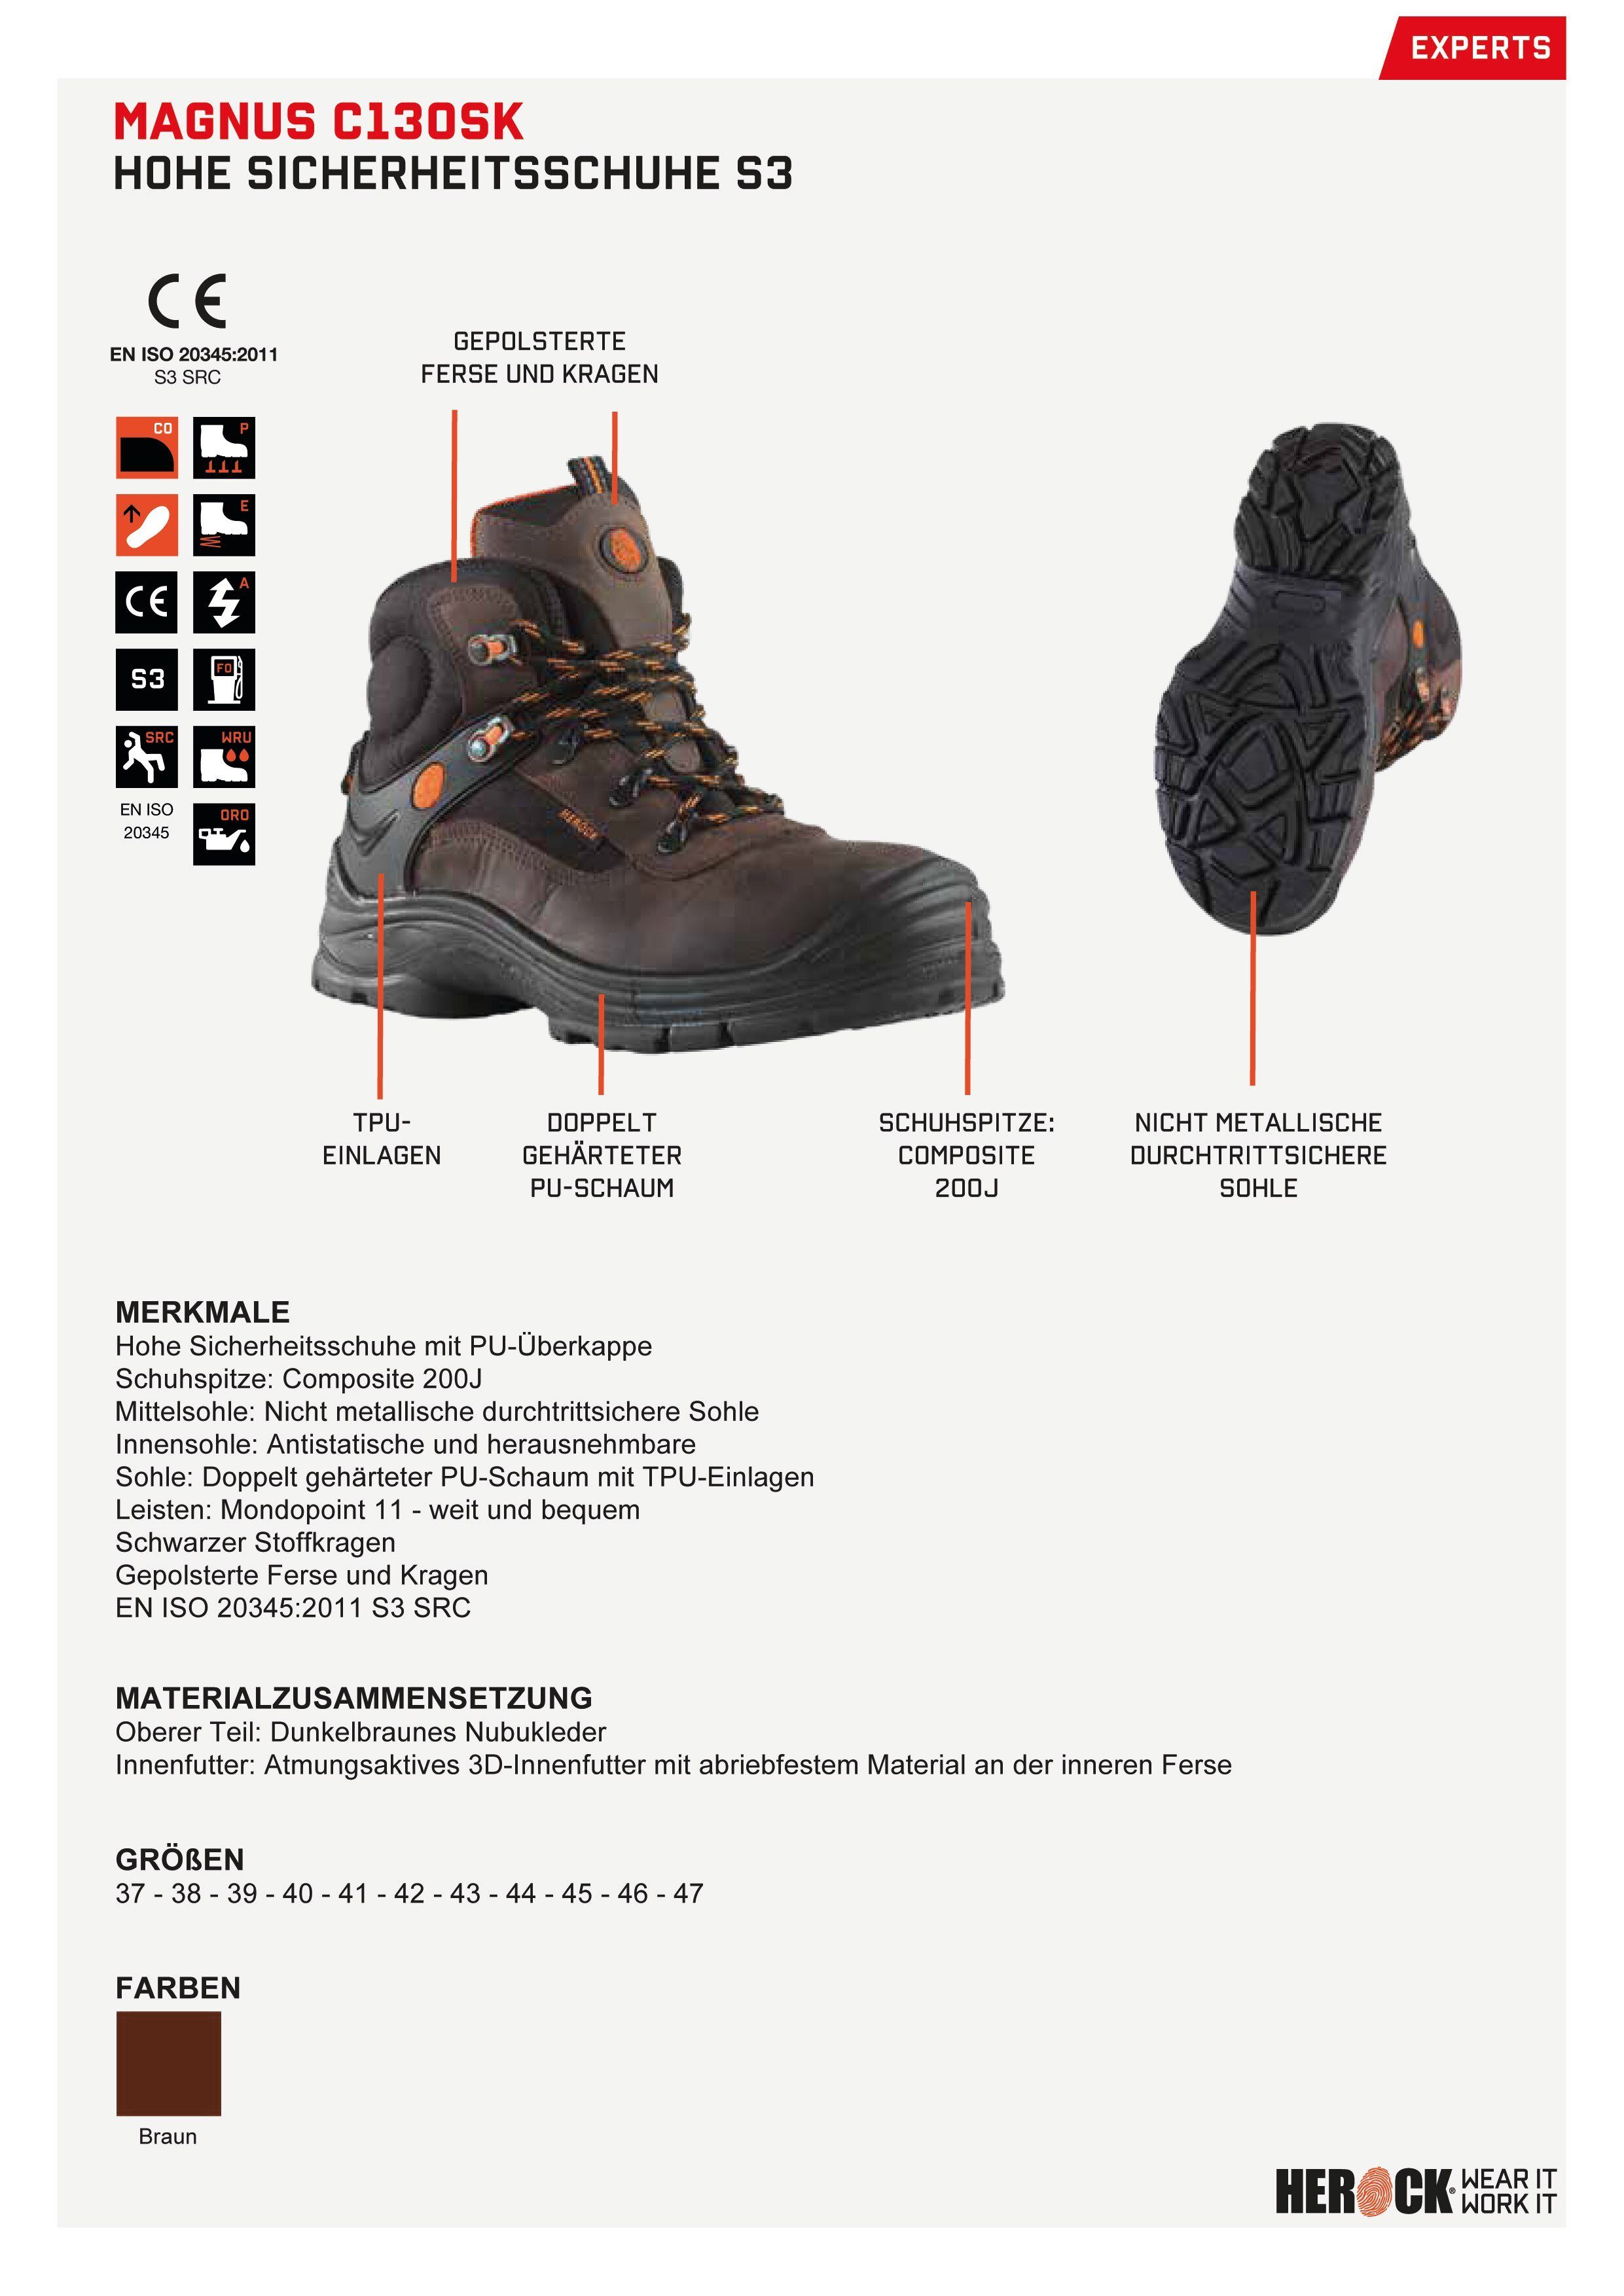 Magnus S3 Compo Echtes Klasse Leder, nicht-metallisch, durchtrittsicher, S3 Sicherheitsschuh High Schuhe Herock weit,